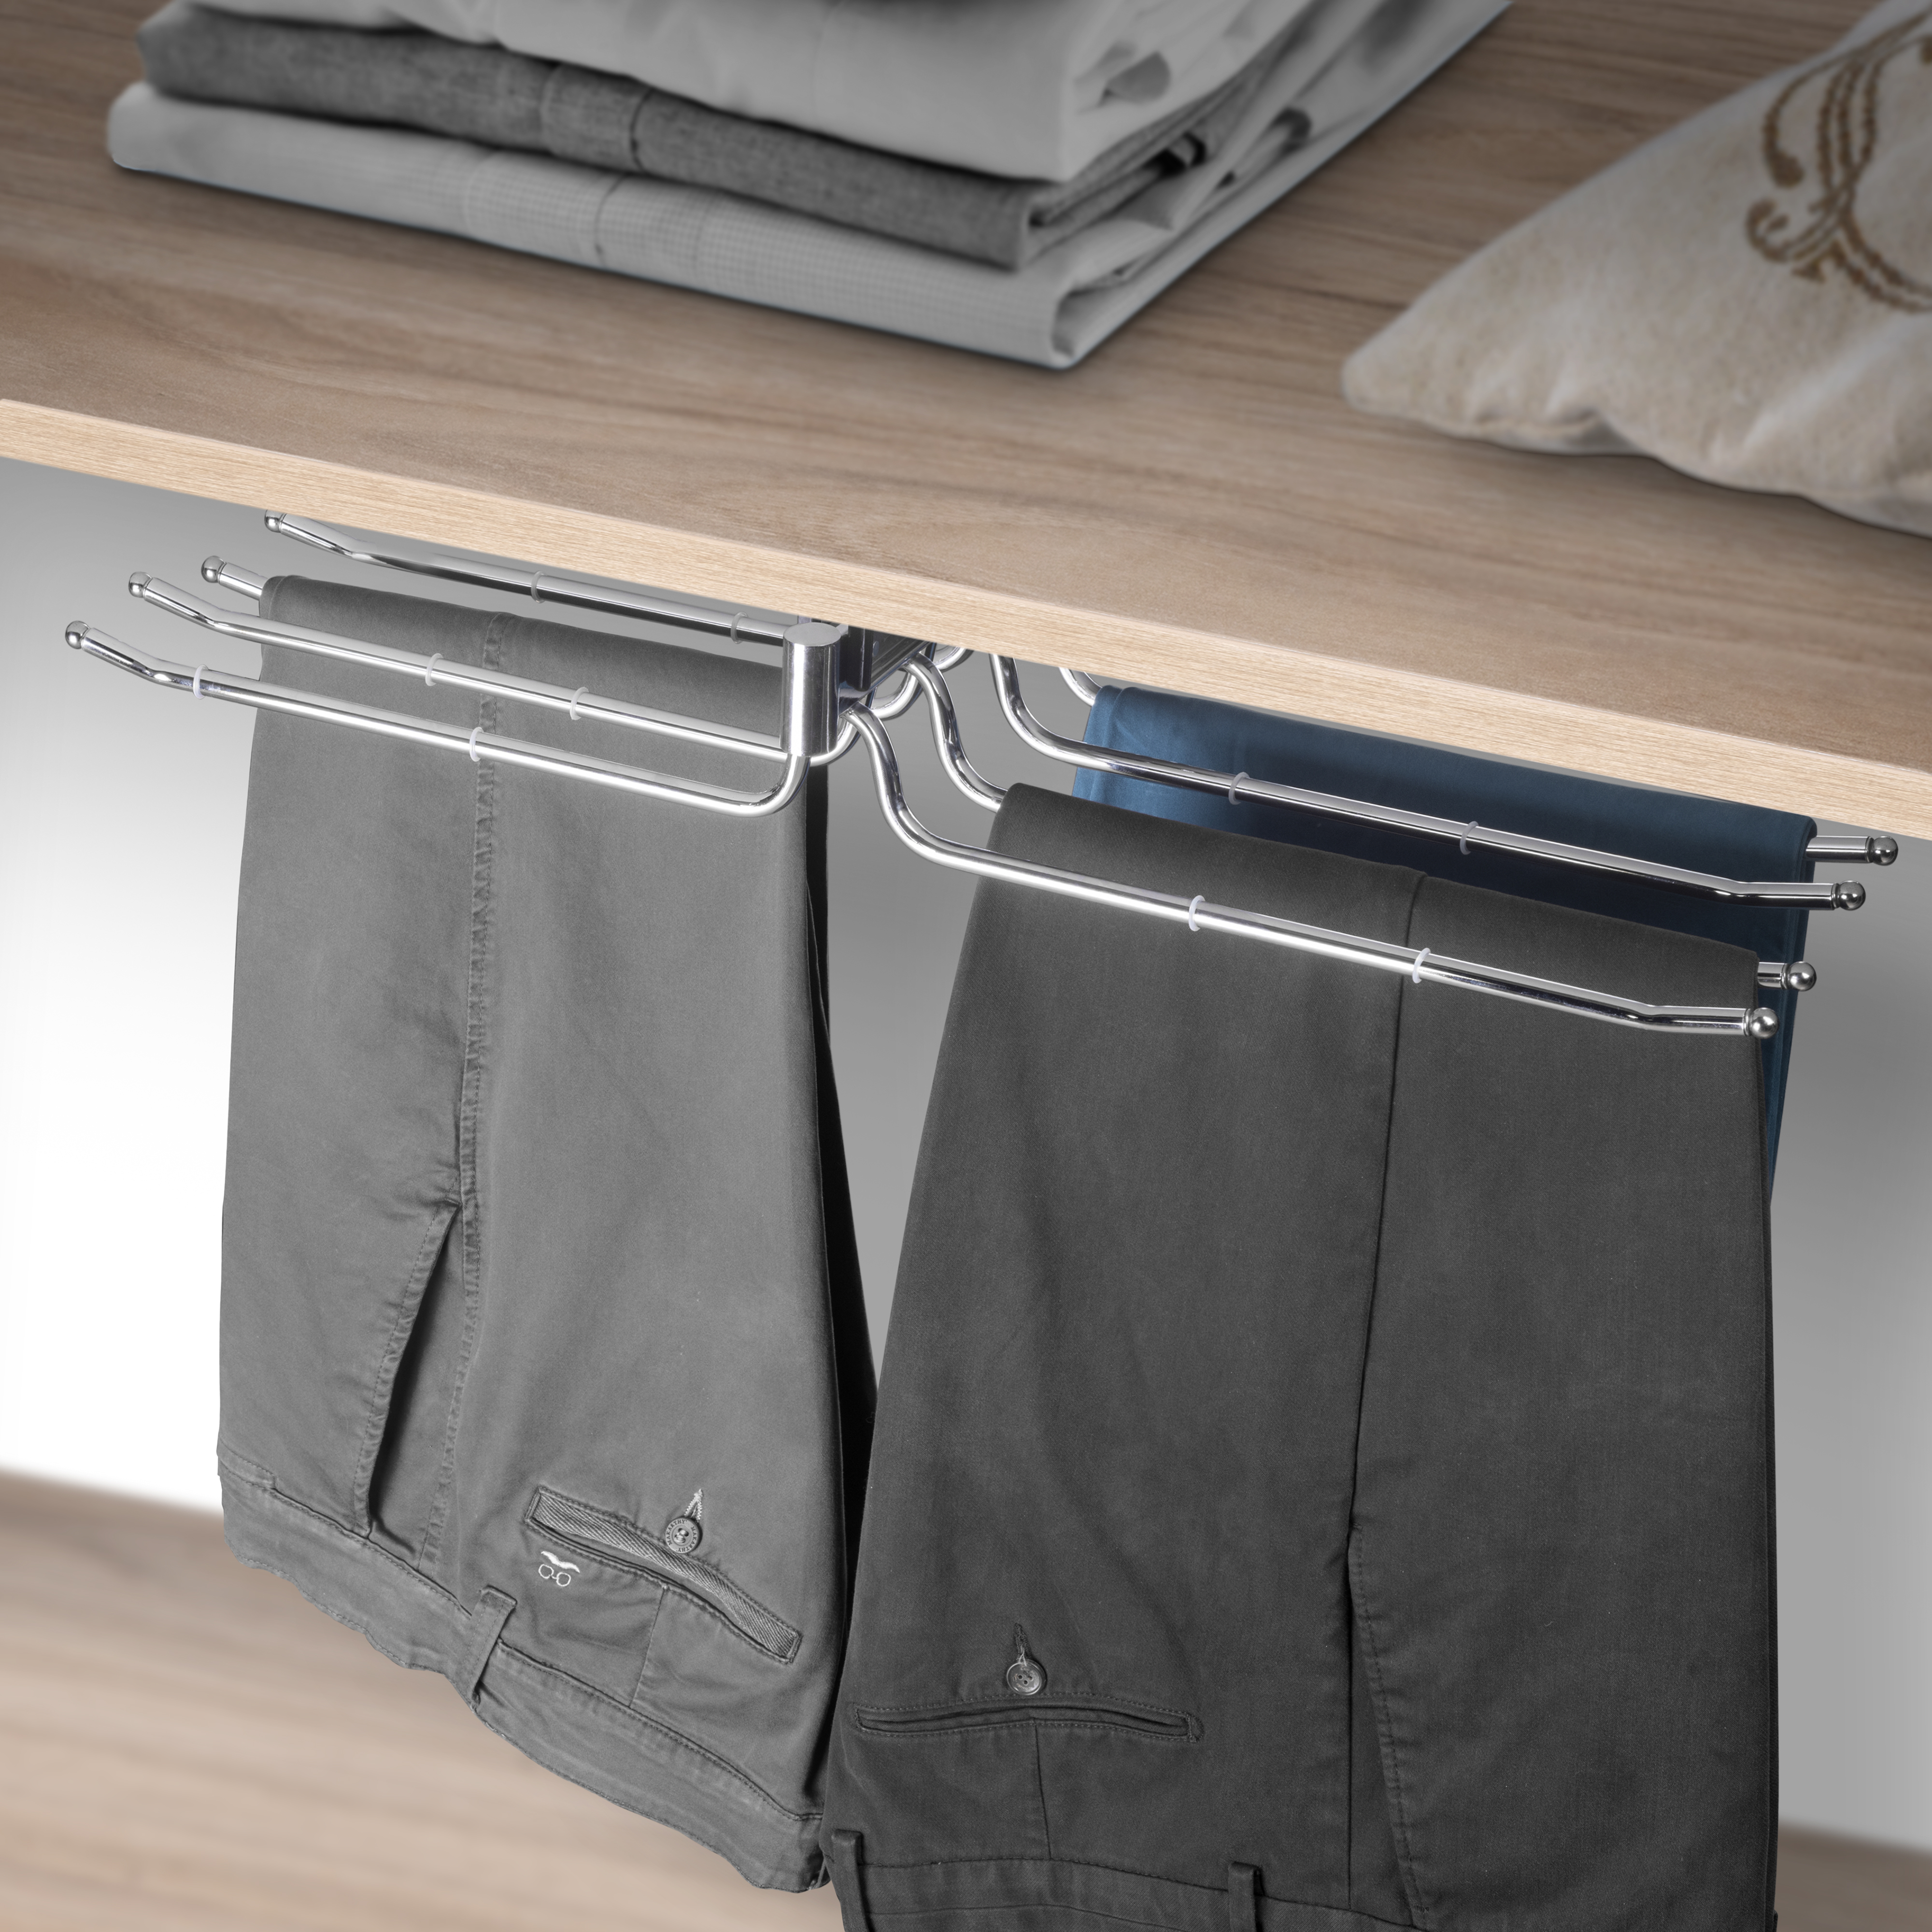  Porte-pantalons double amovible Self pour armoire., Chrome, Acier et Plastique.